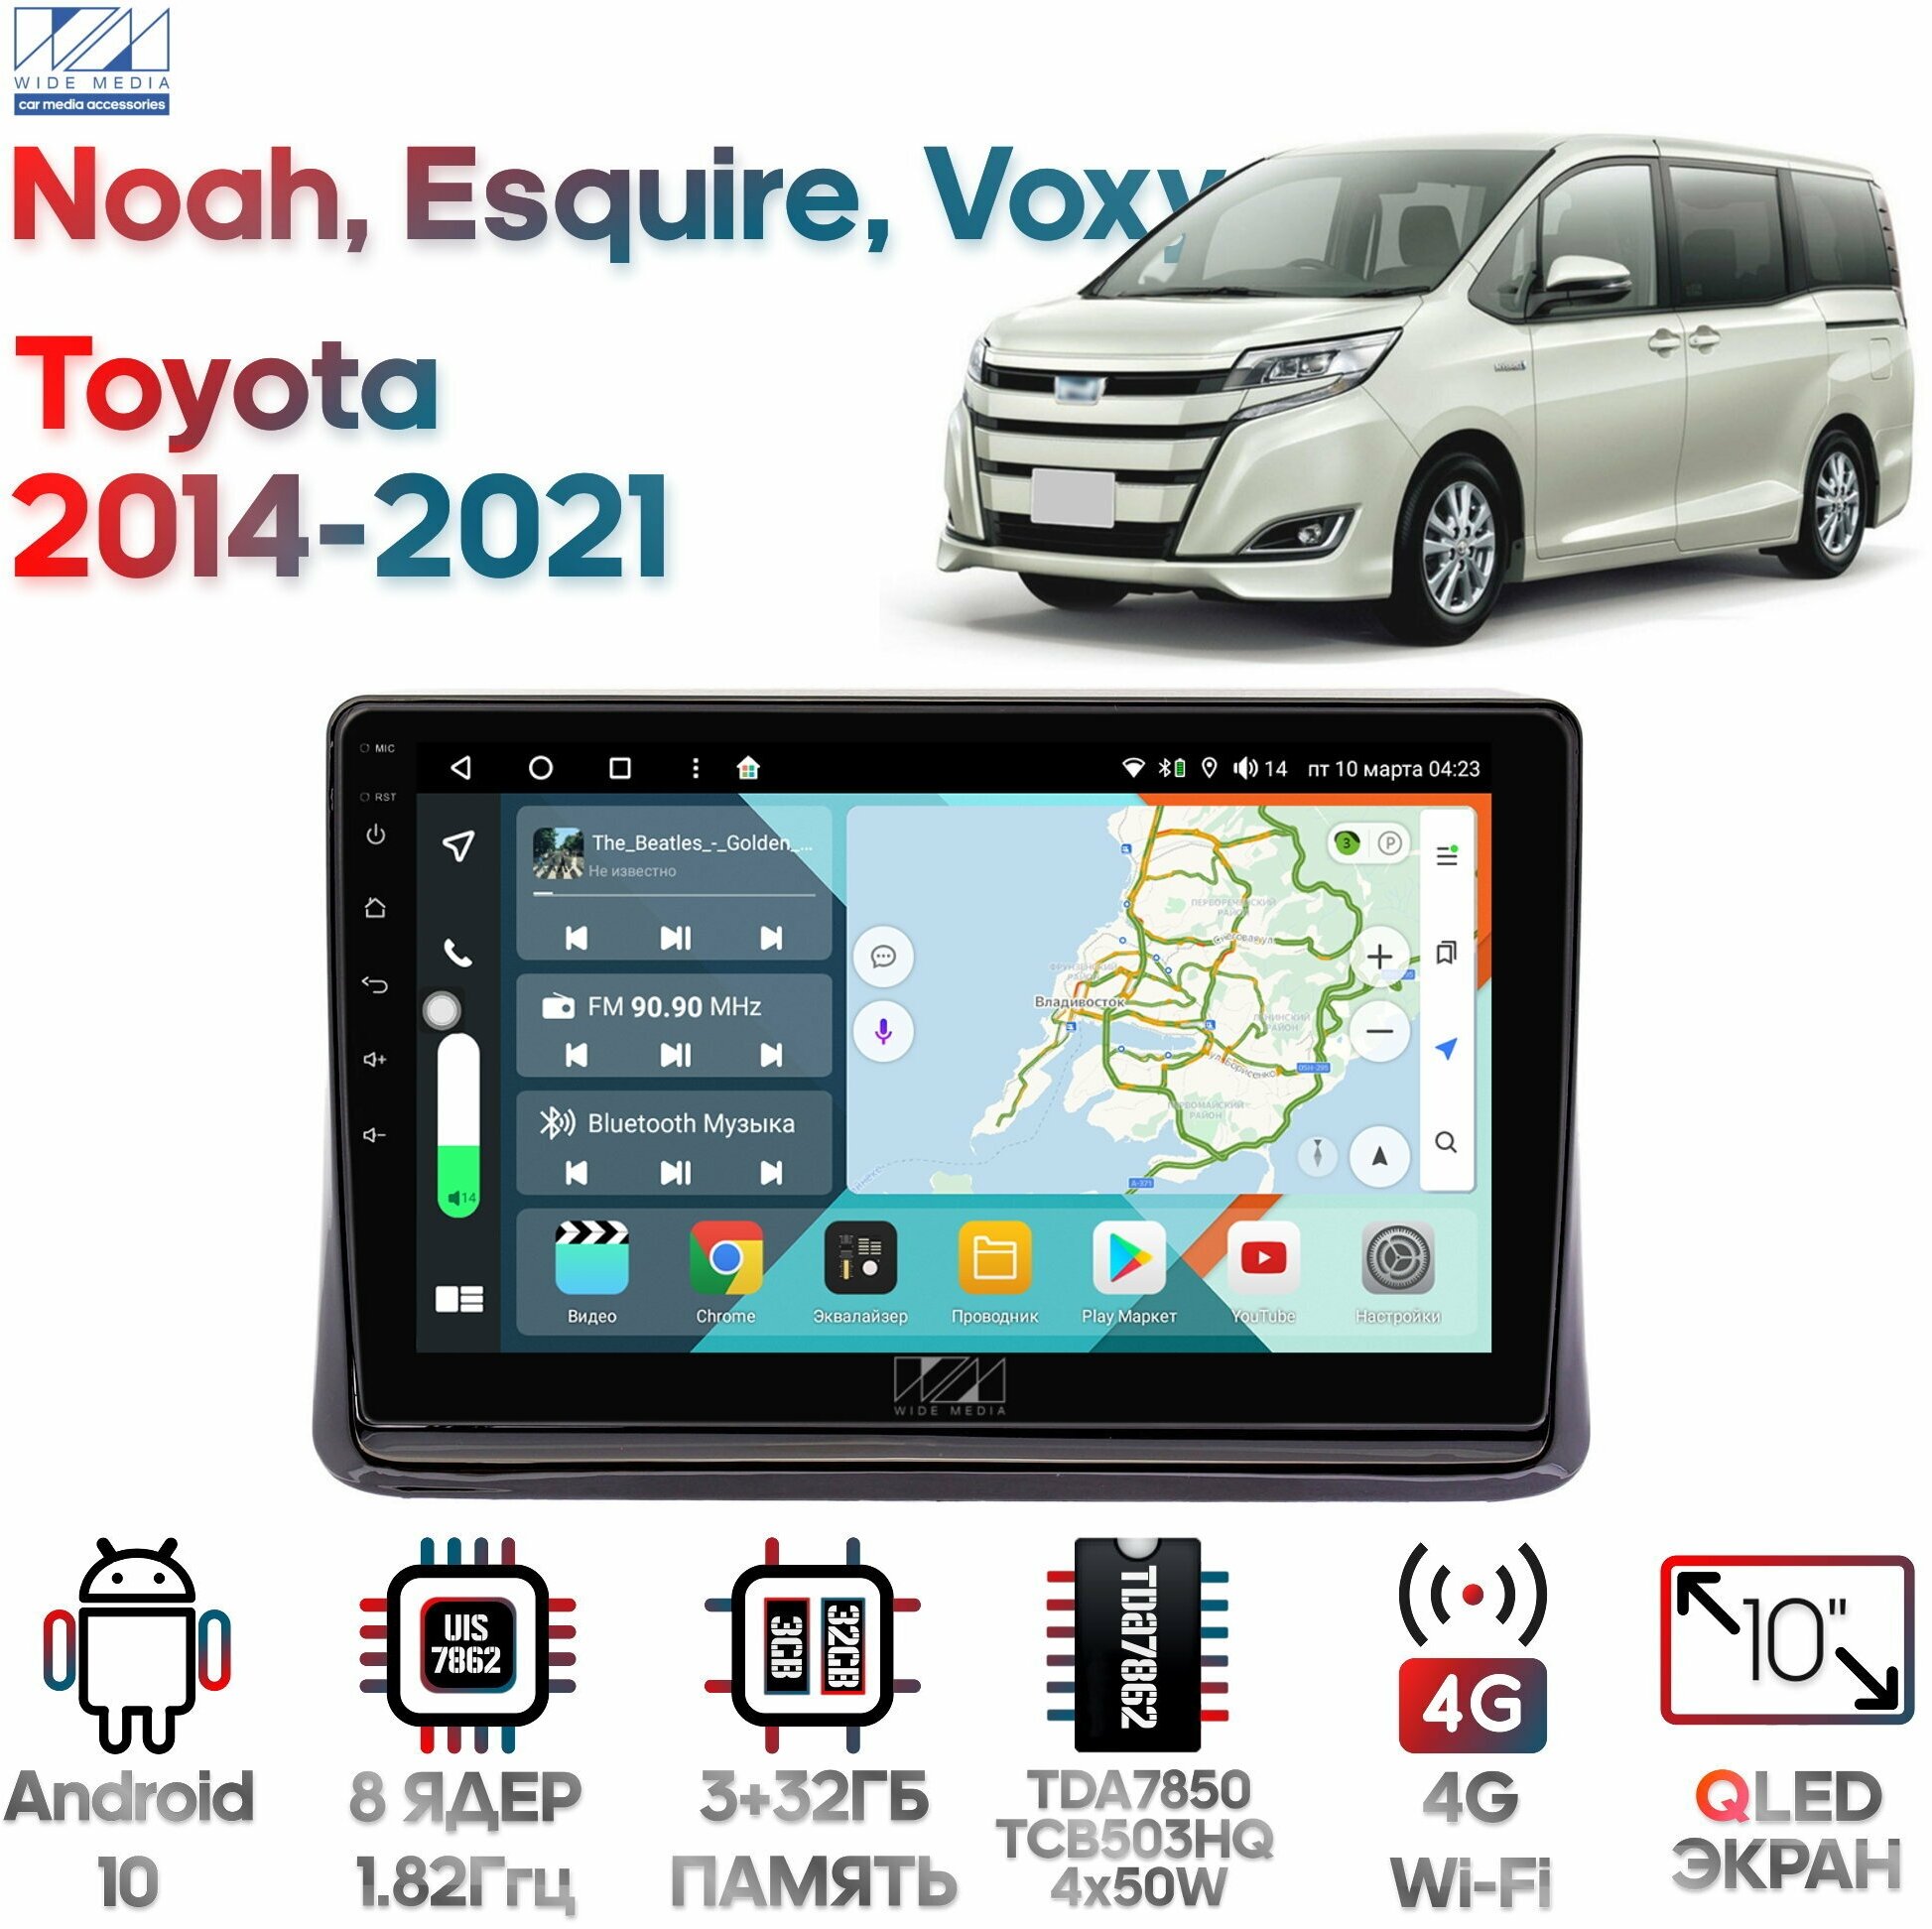 Штатная магнитола Wide Media Toyota Noah, Esquire, Voxy 2014 - 2021 [Android 10, 10 дюймов, 3/32GB, 8 ядер, TDA7850, DSP, SPDIF, QLED, 1280*720]